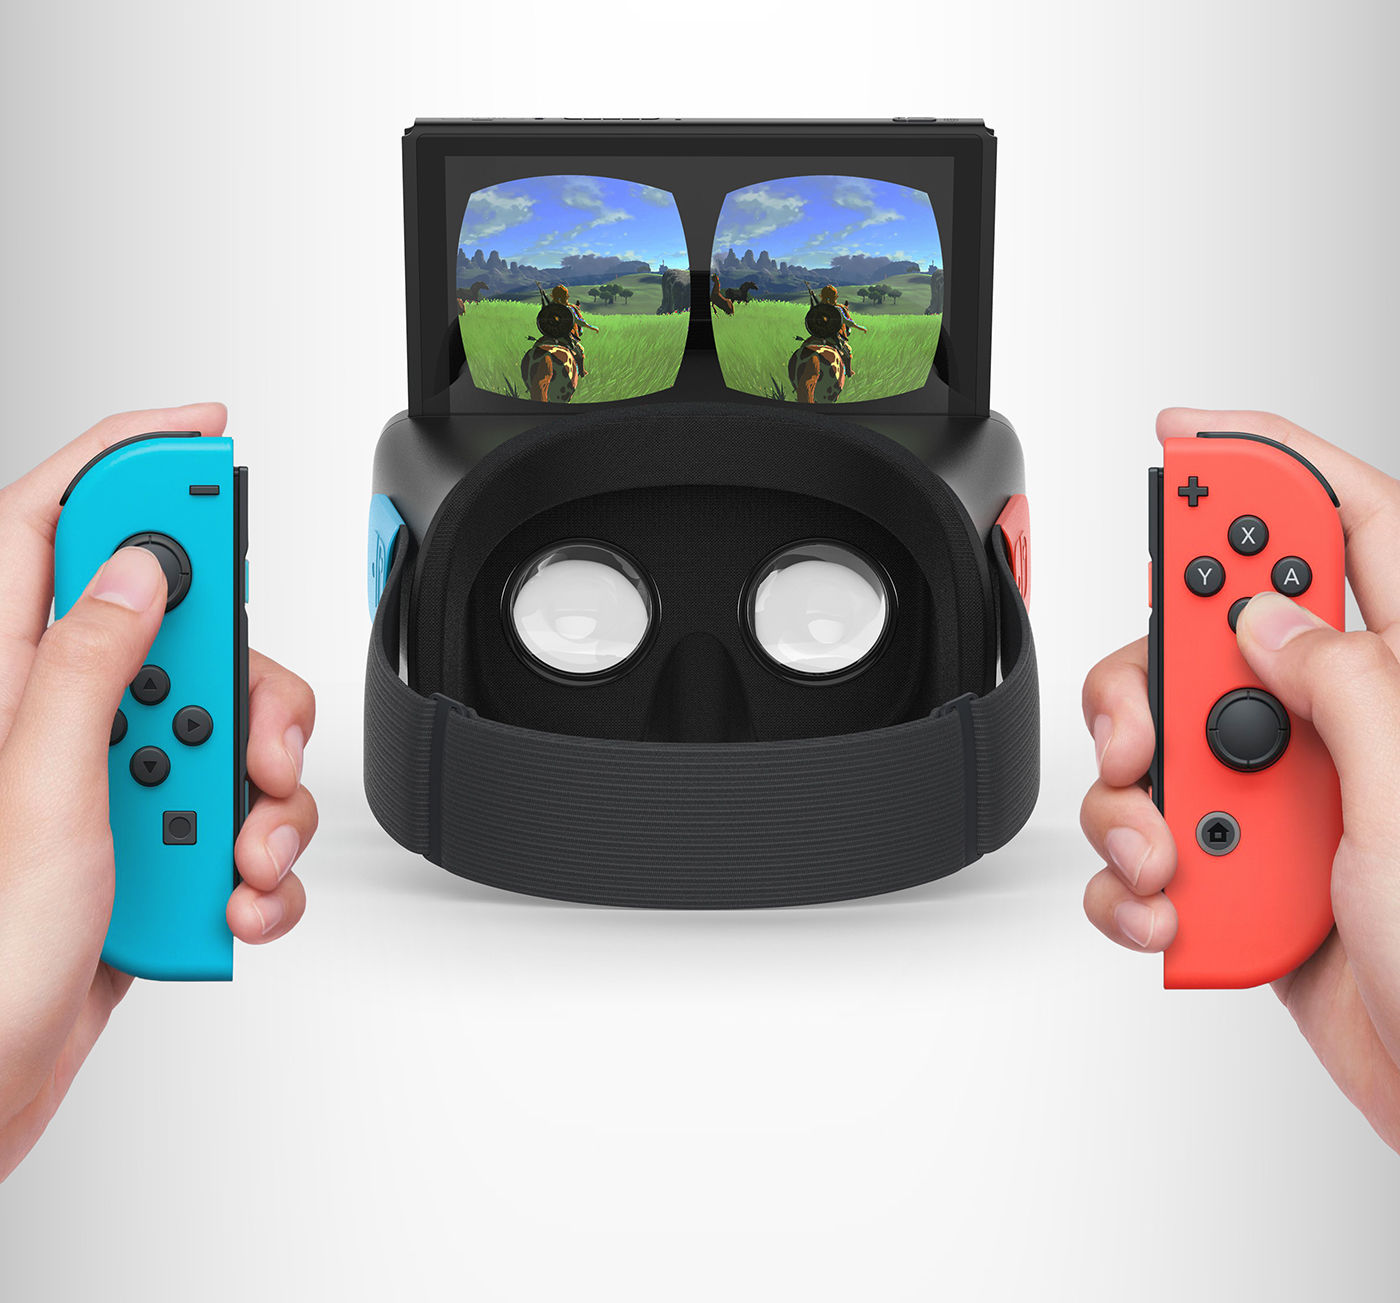 Fake Switch VR cihazı ortalığı karıştırdı